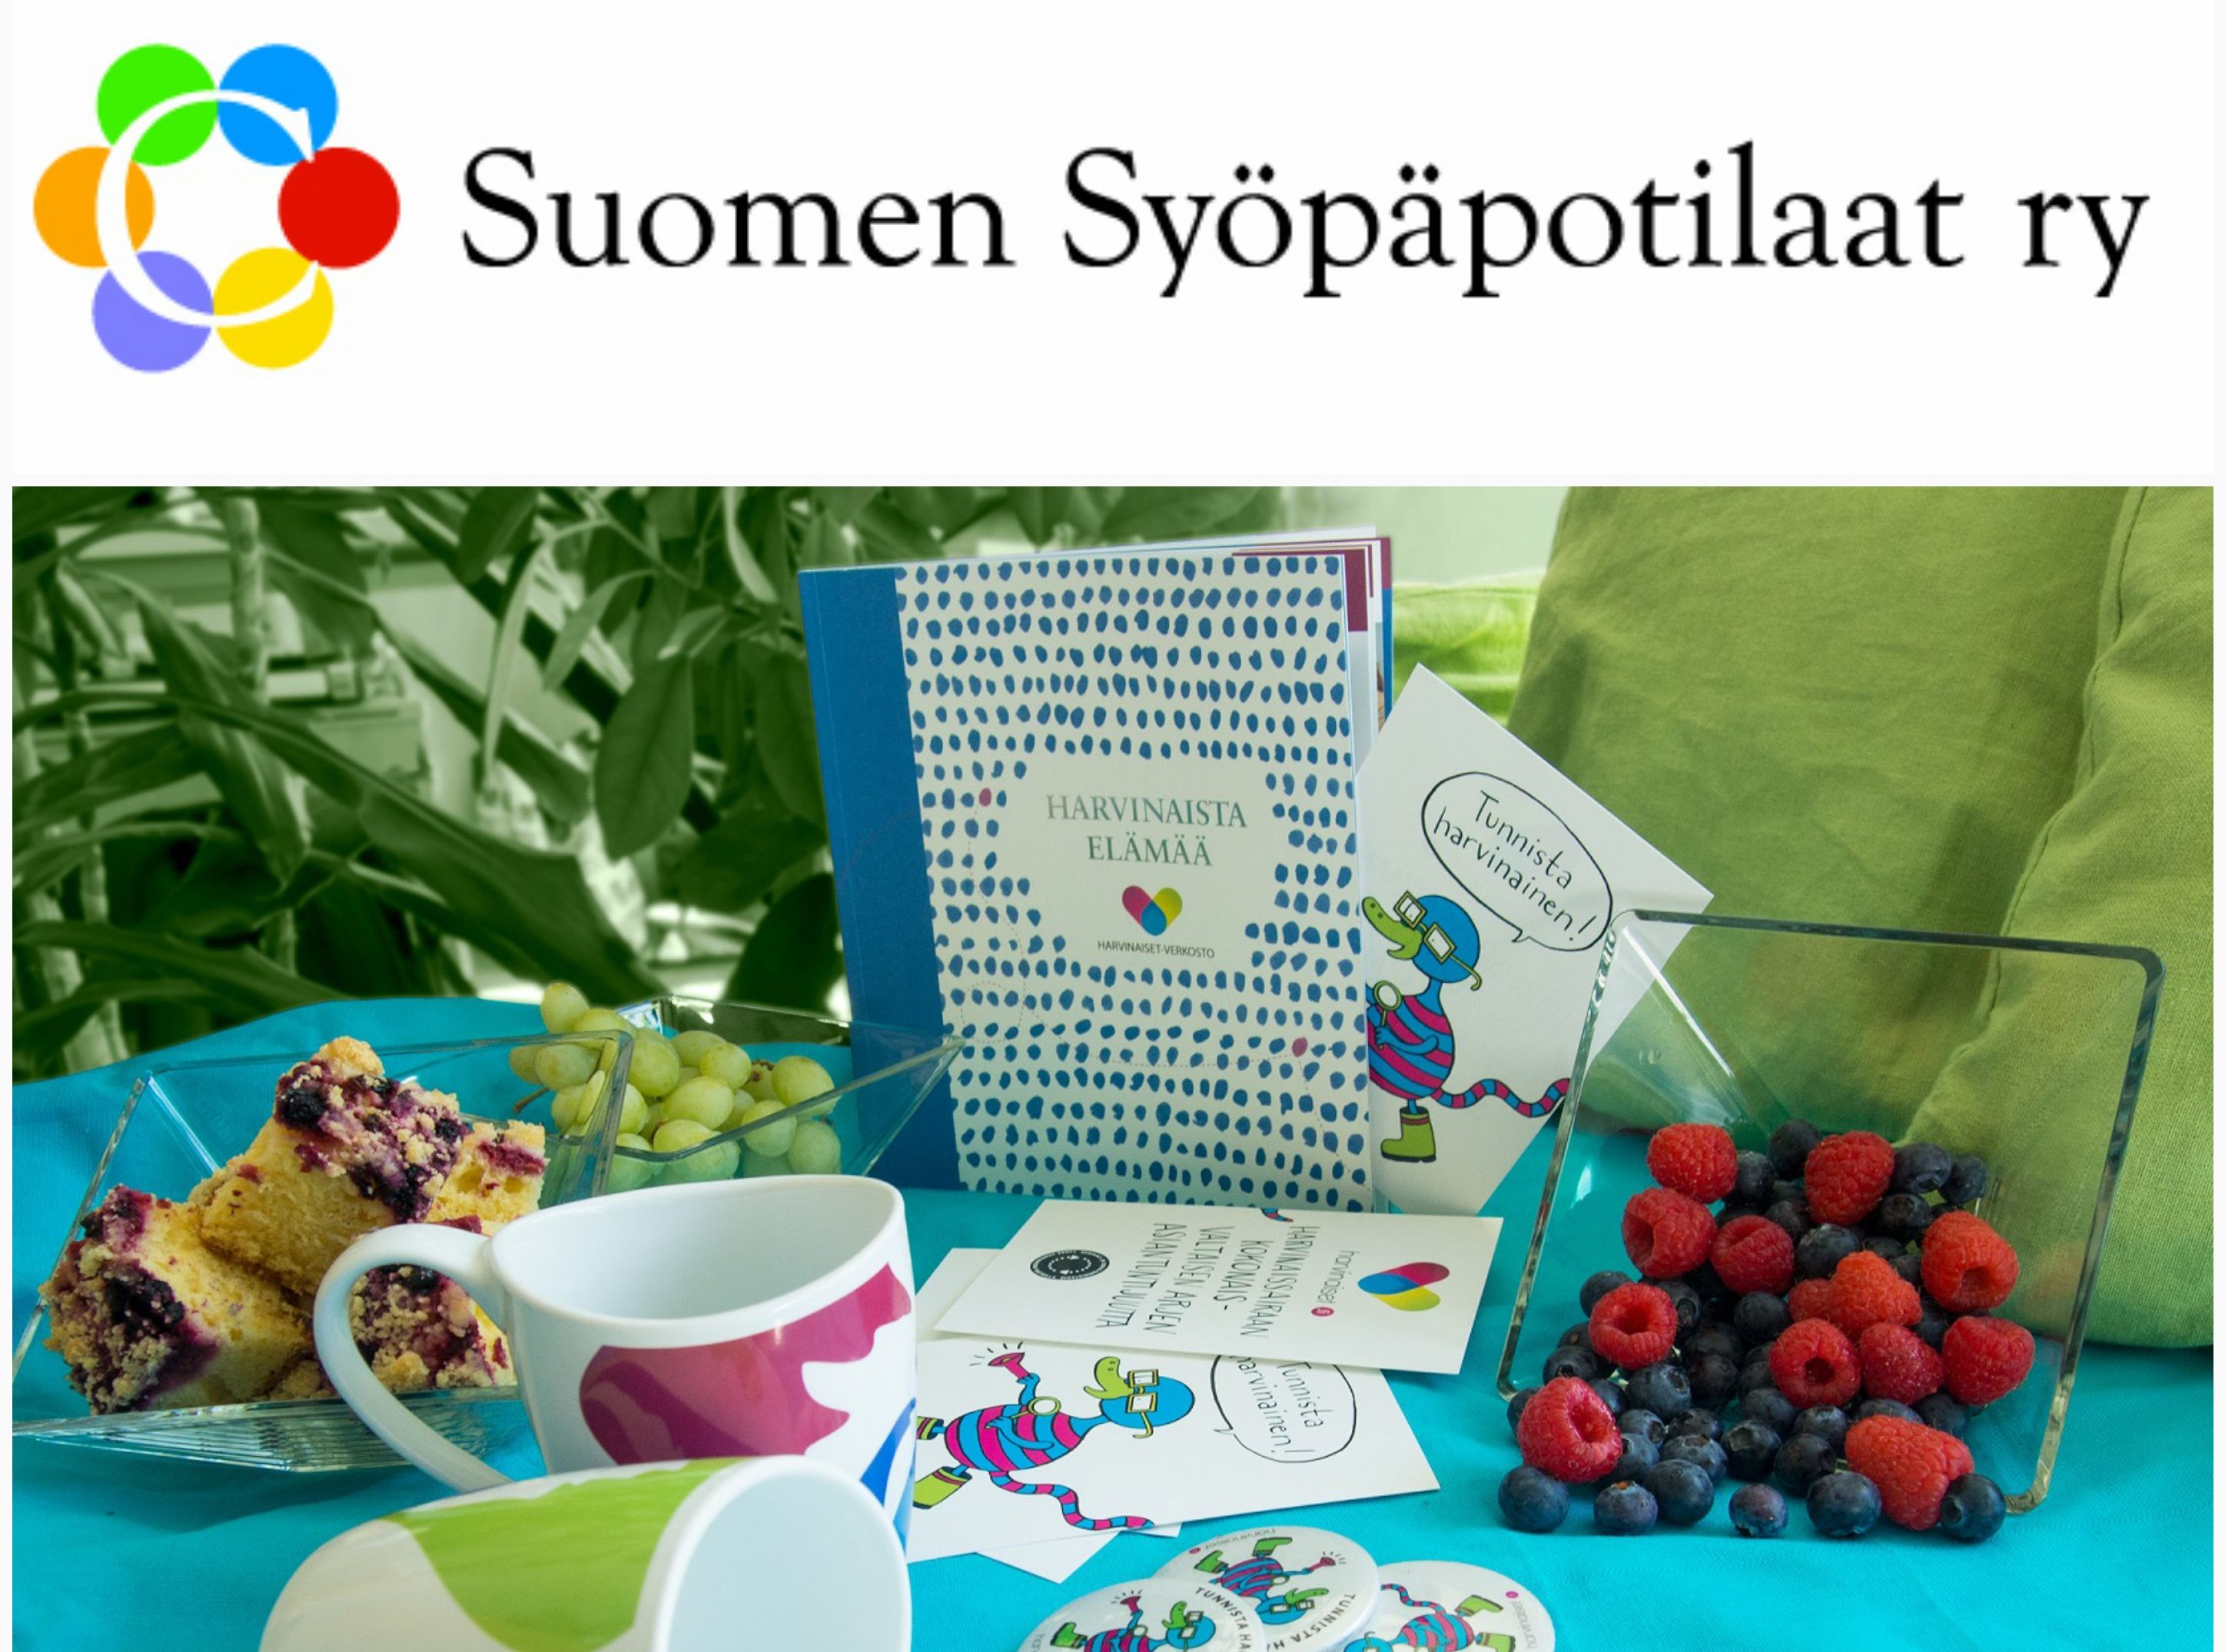 Suomen syöpäpotilaat -logo ja verkoston materiaaleja.